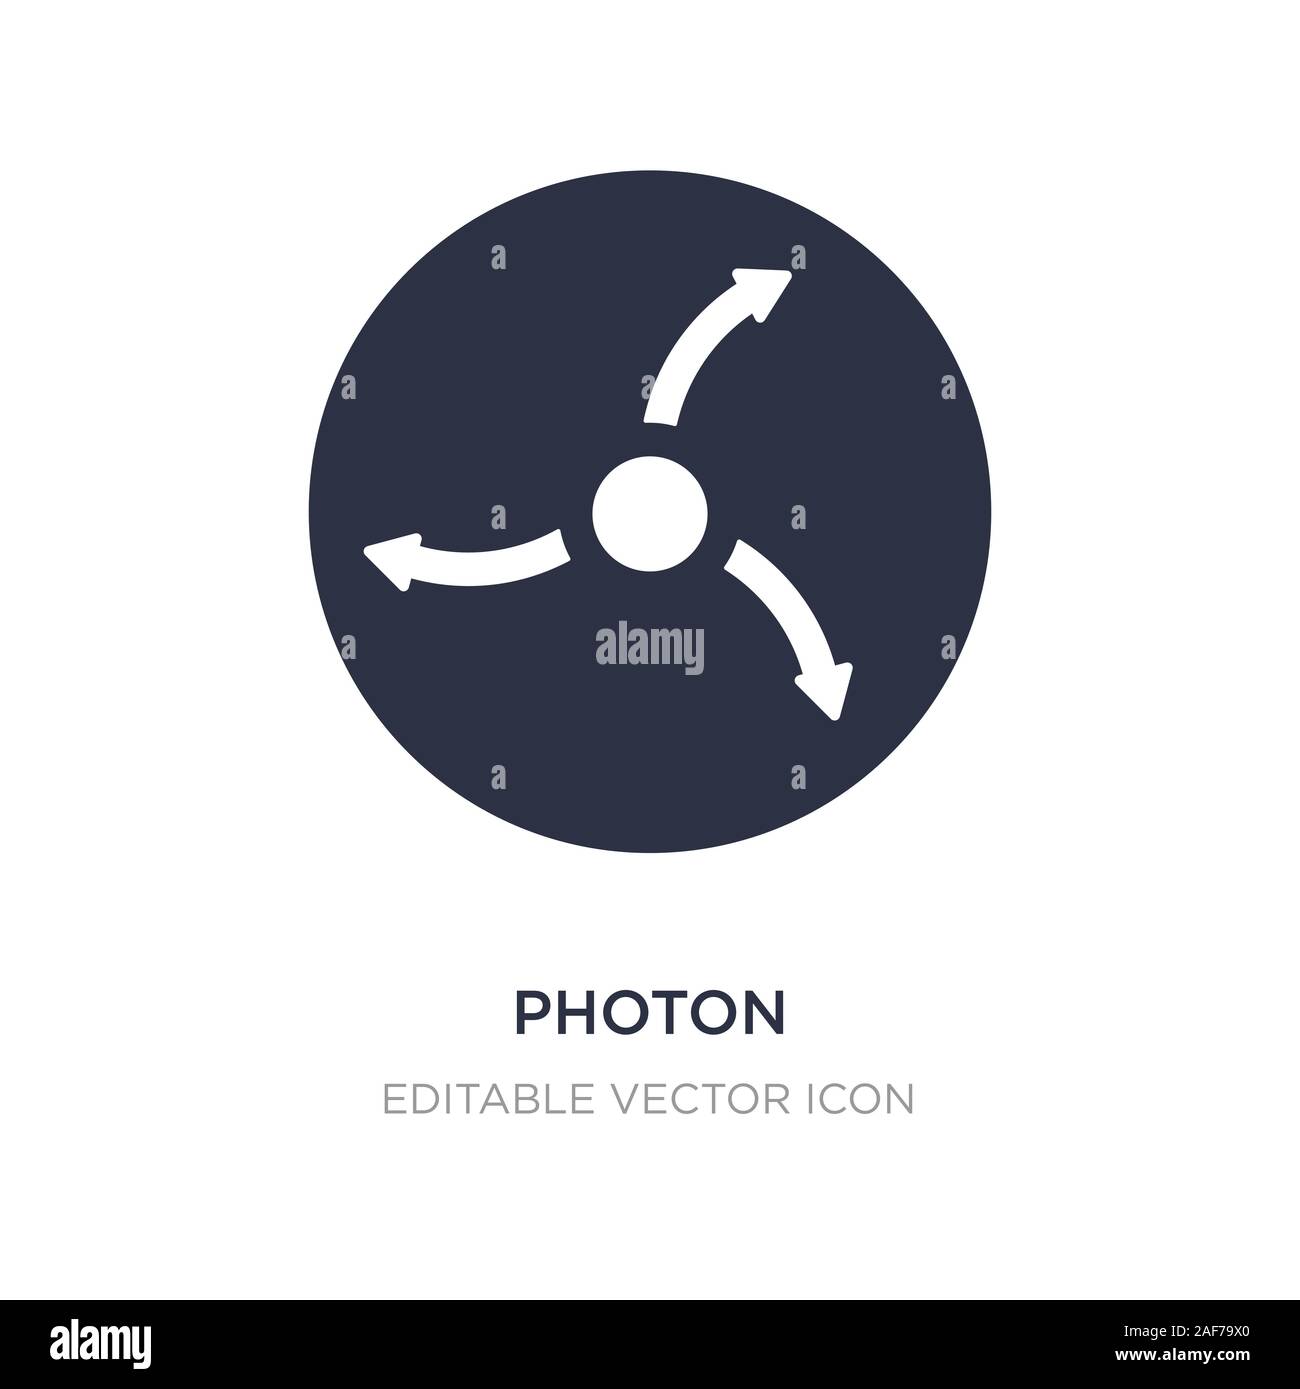 Photon Symbol auf weißem Hintergrund. Einfaches element Abbildung von  Bildung Konzept. photon Symbol Design Stock-Vektorgrafik - Alamy